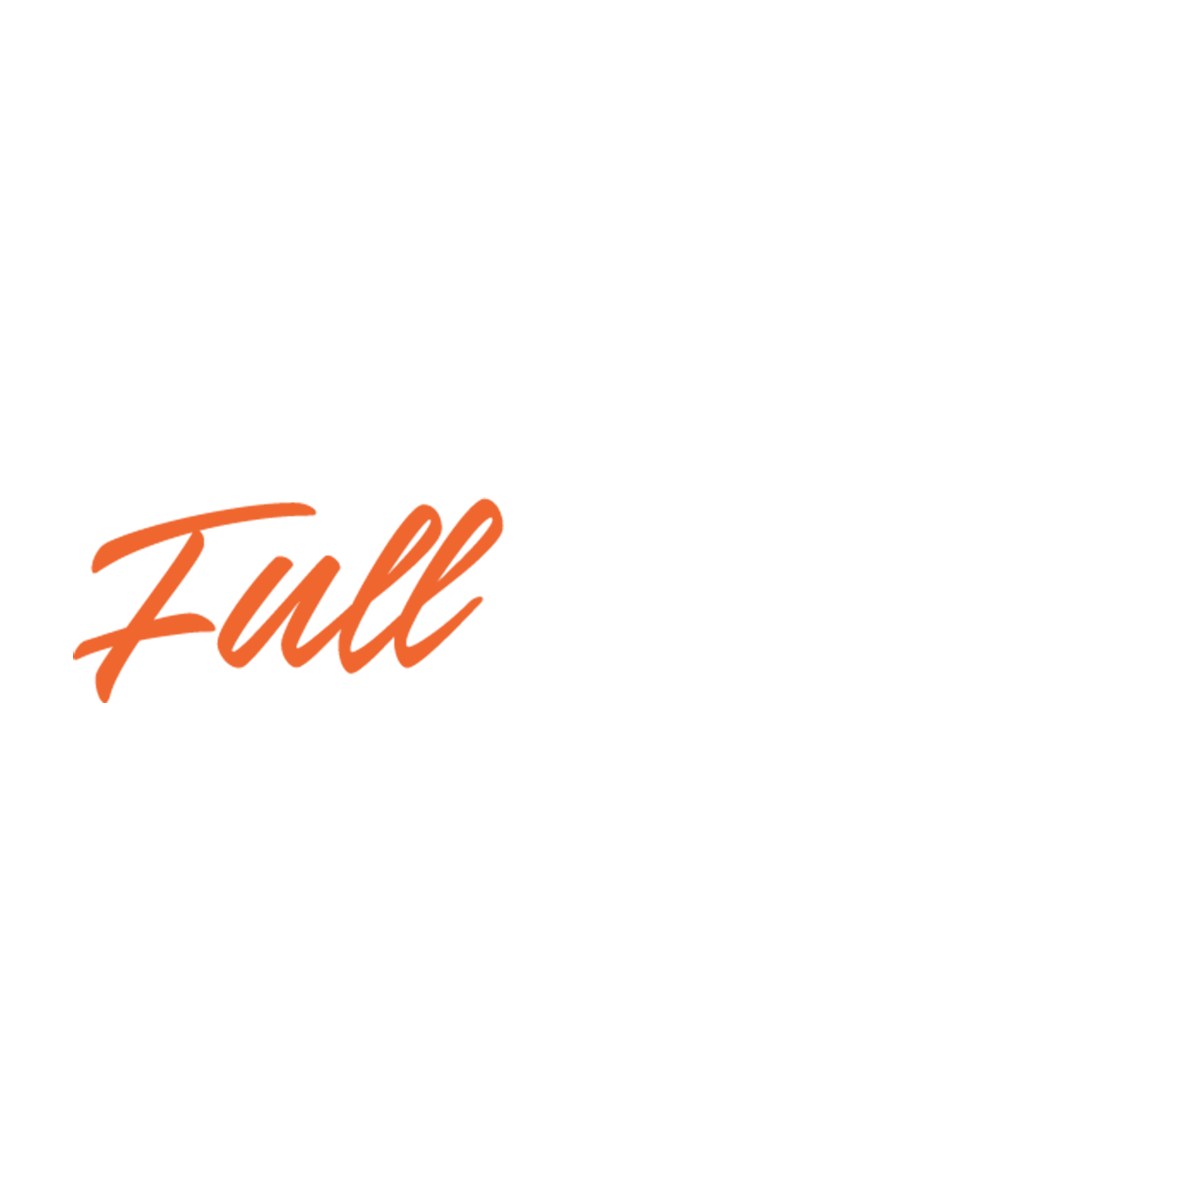 LED | full motion